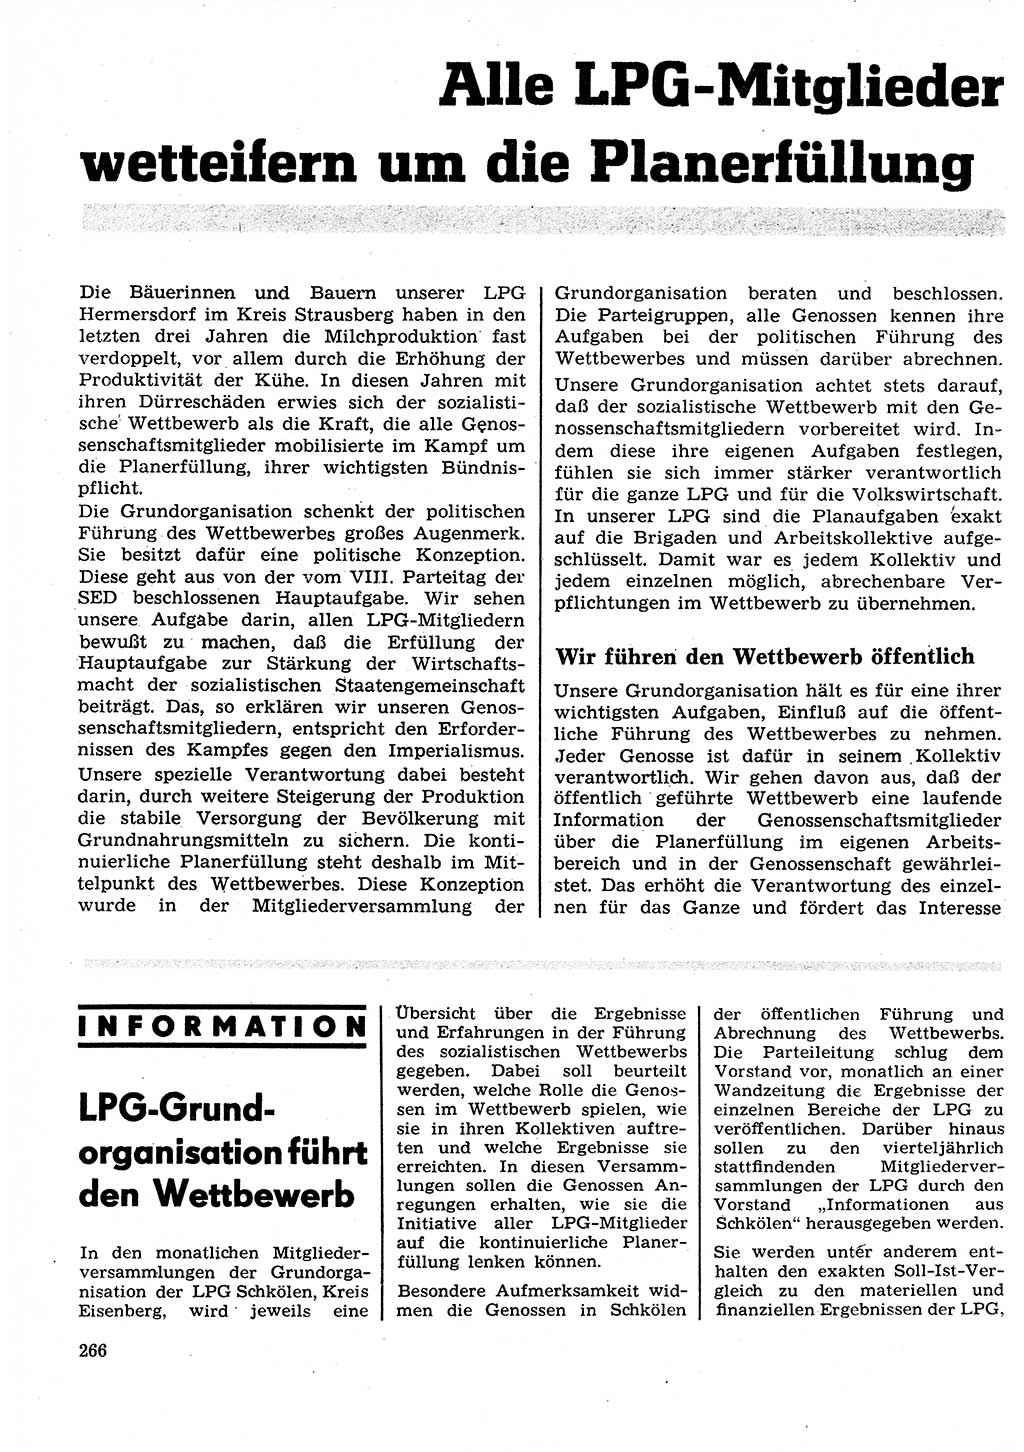 Neuer Weg (NW), Organ des Zentralkomitees (ZK) der SED (Sozialistische Einheitspartei Deutschlands) für Fragen des Parteilebens, 27. Jahrgang [Deutsche Demokratische Republik (DDR)] 1972, Seite 266 (NW ZK SED DDR 1972, S. 266)